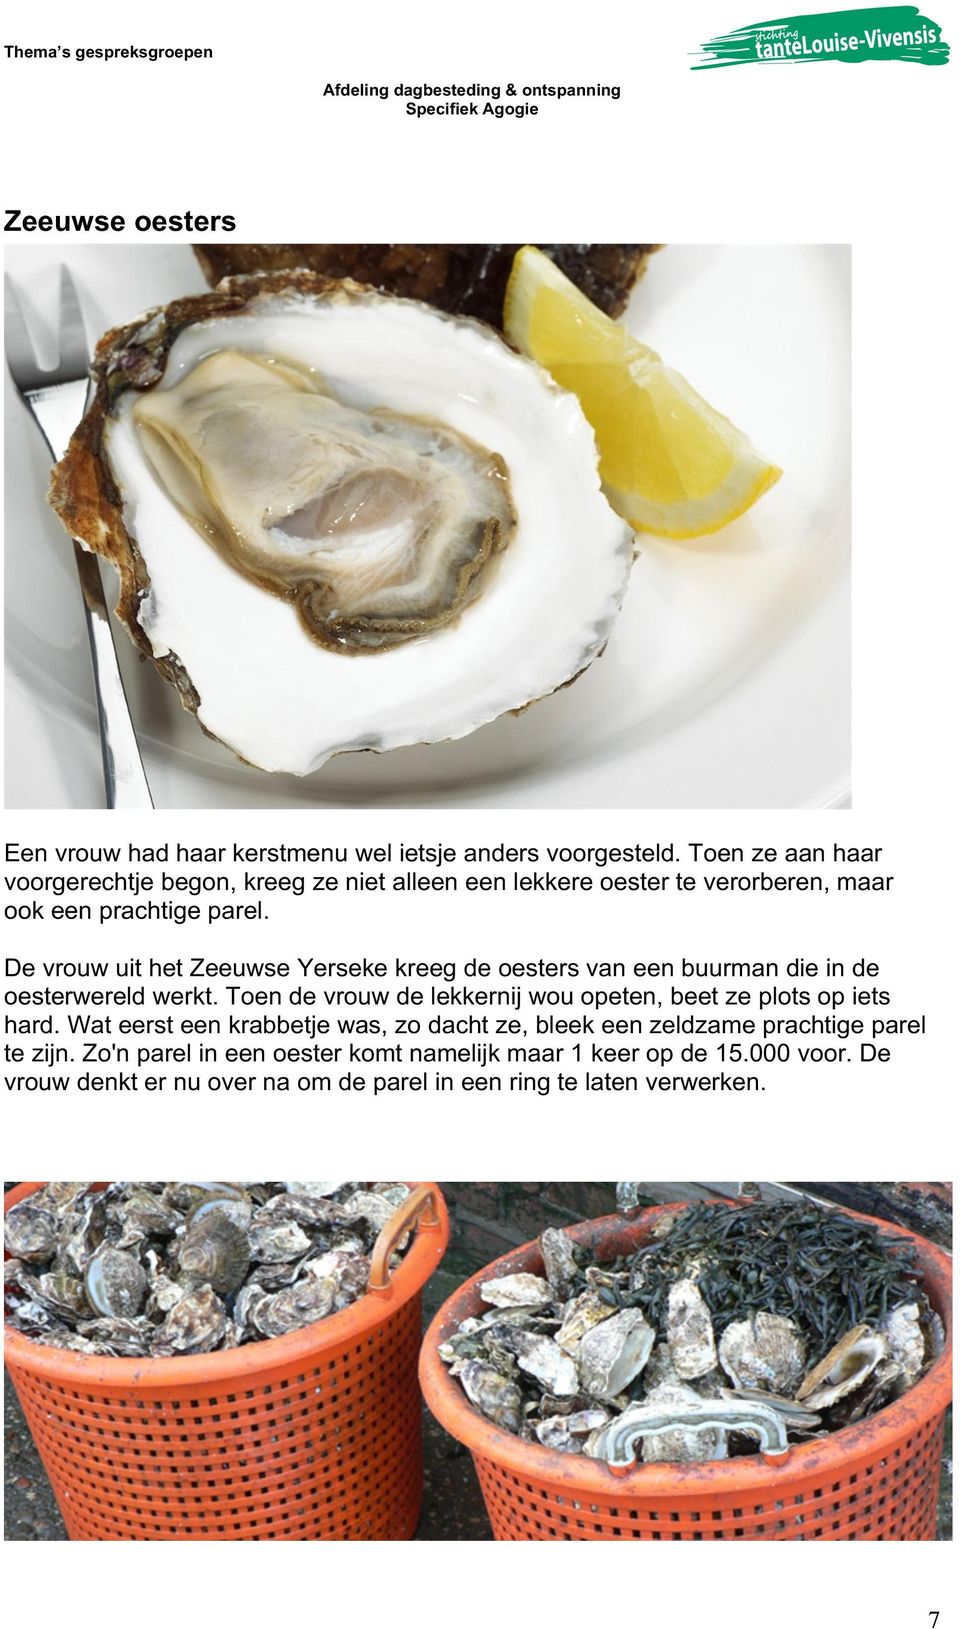 De vrouw uit het Zeeuwse Yerseke kreeg de oesters van een buurman die in de oesterwereld werkt.